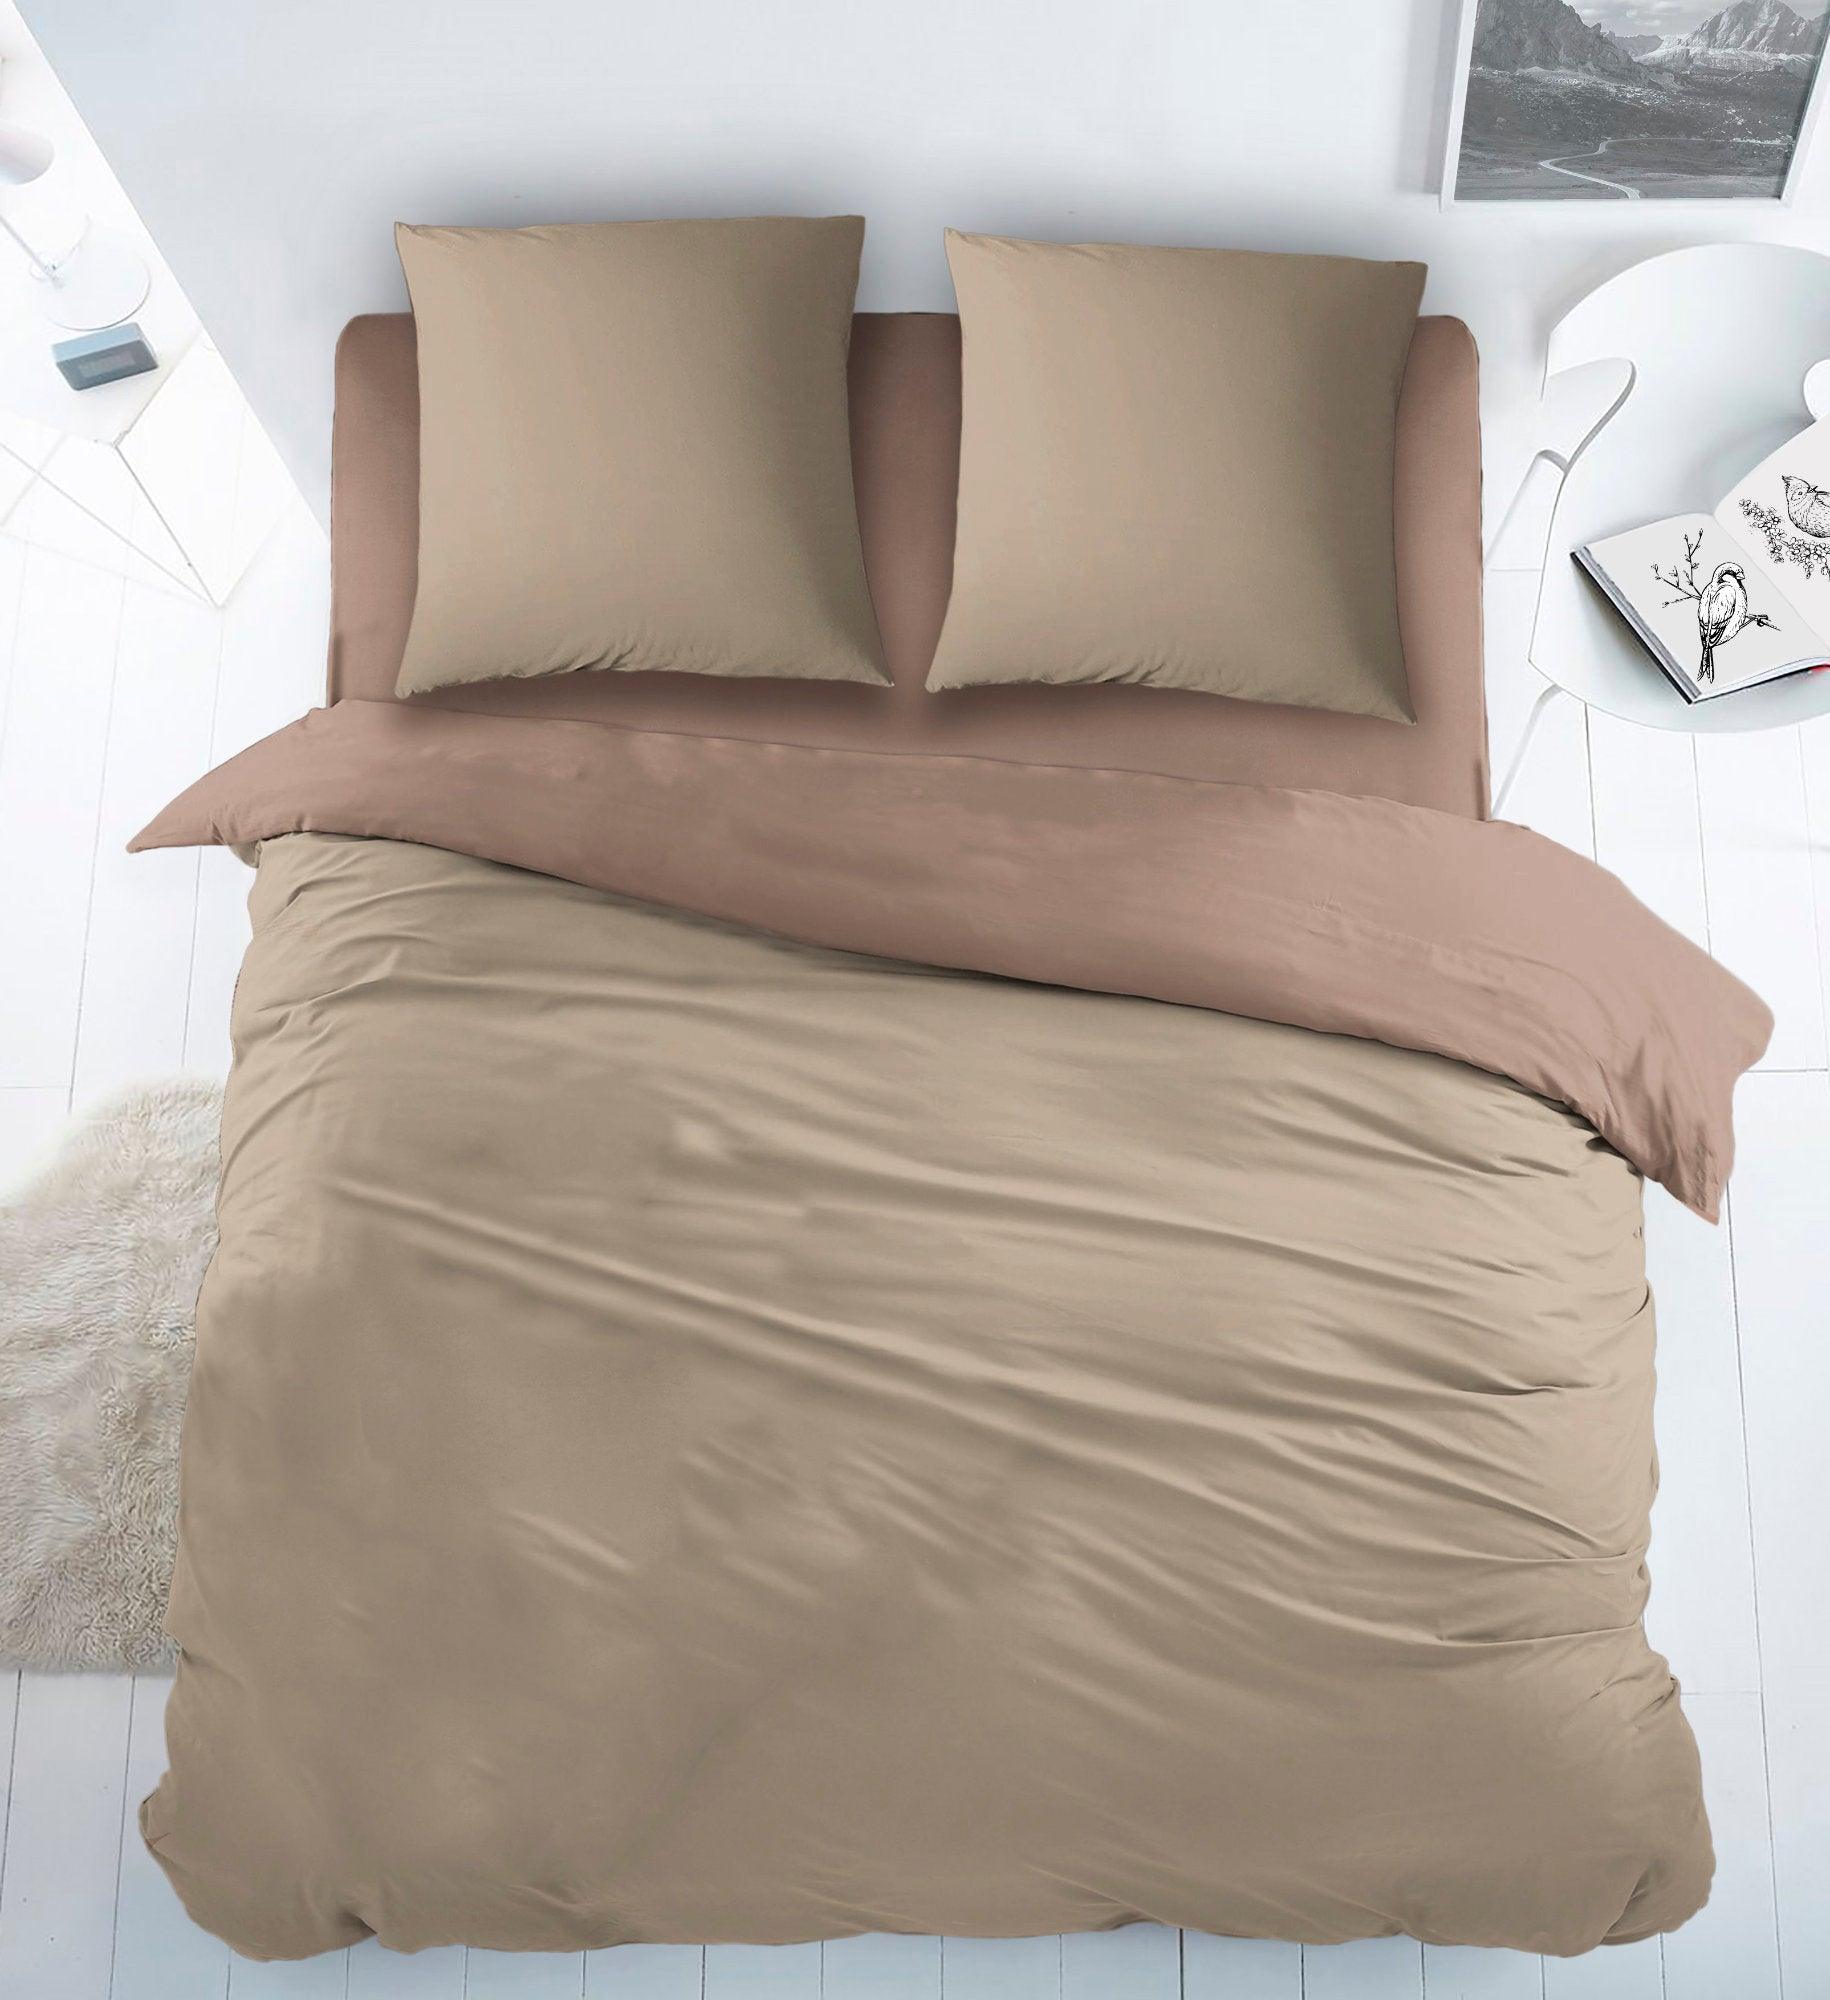 Baumwoll-Bettbezug, doppelseitig, Beige